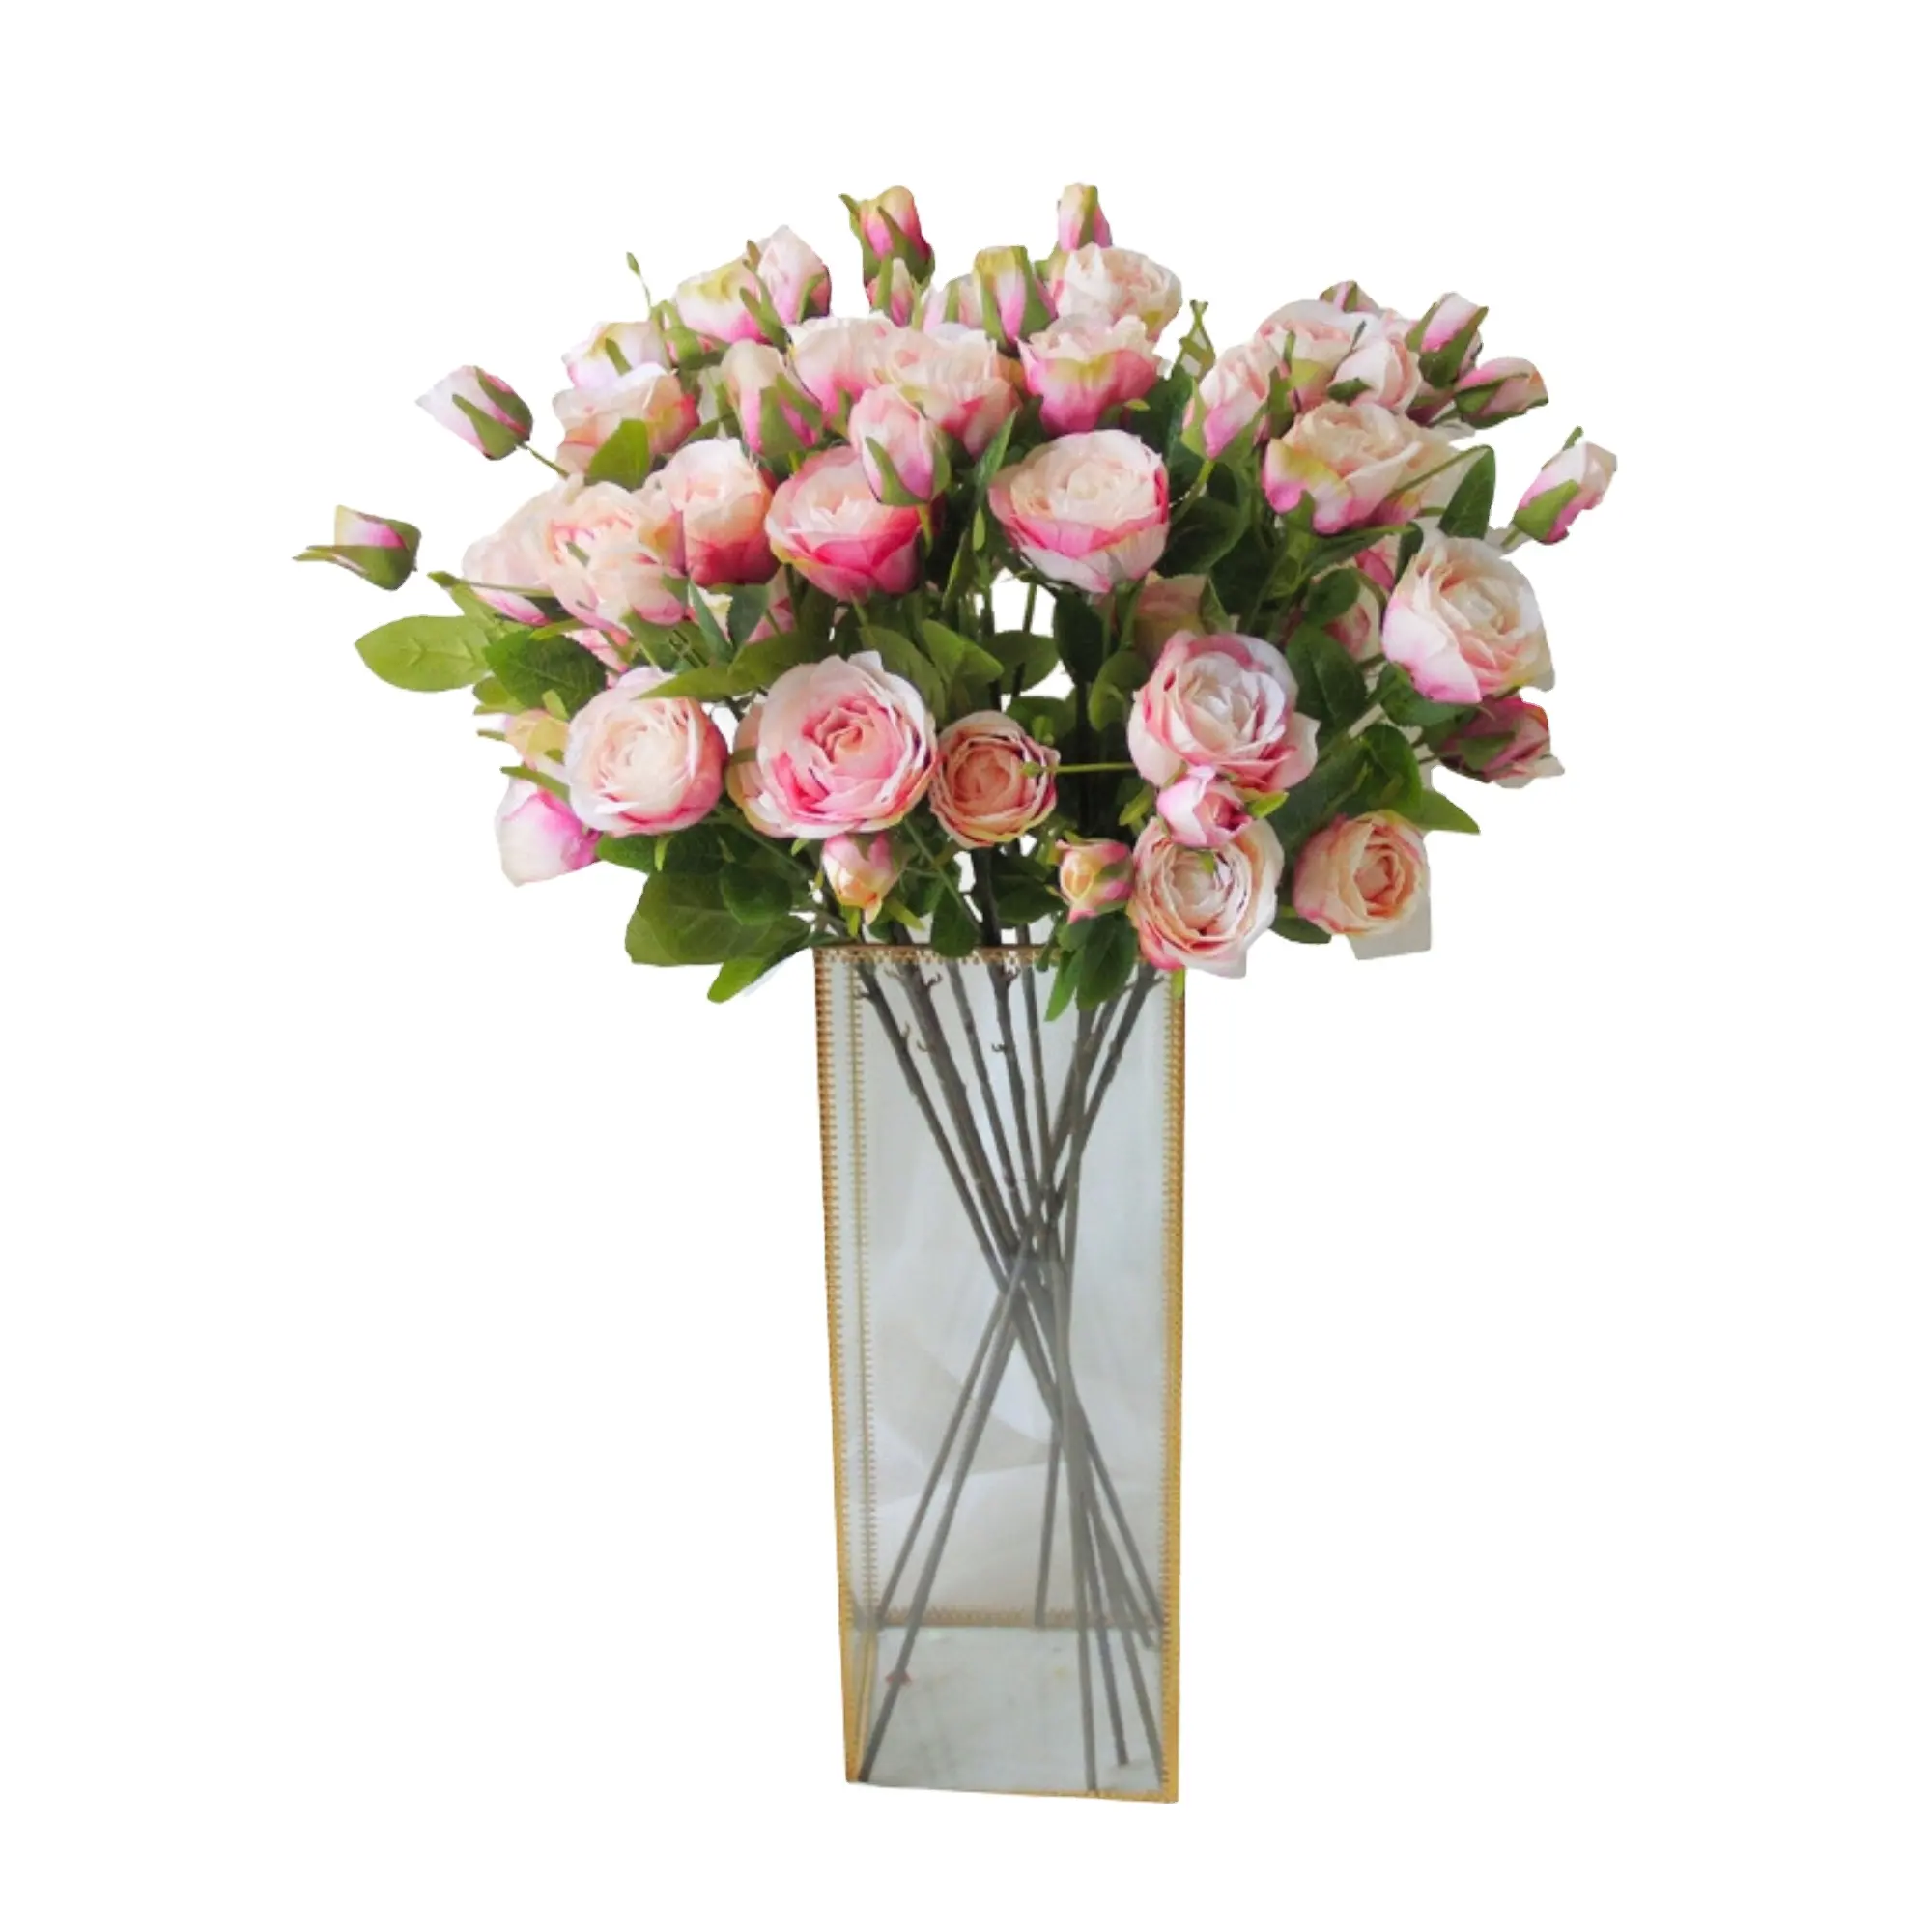 Flores de rosas artificiales de alta simulación, flores de seda, 6 cabezas de rosas de té falsas para interiores y exteriores, decoración del hogar, decoración de boda